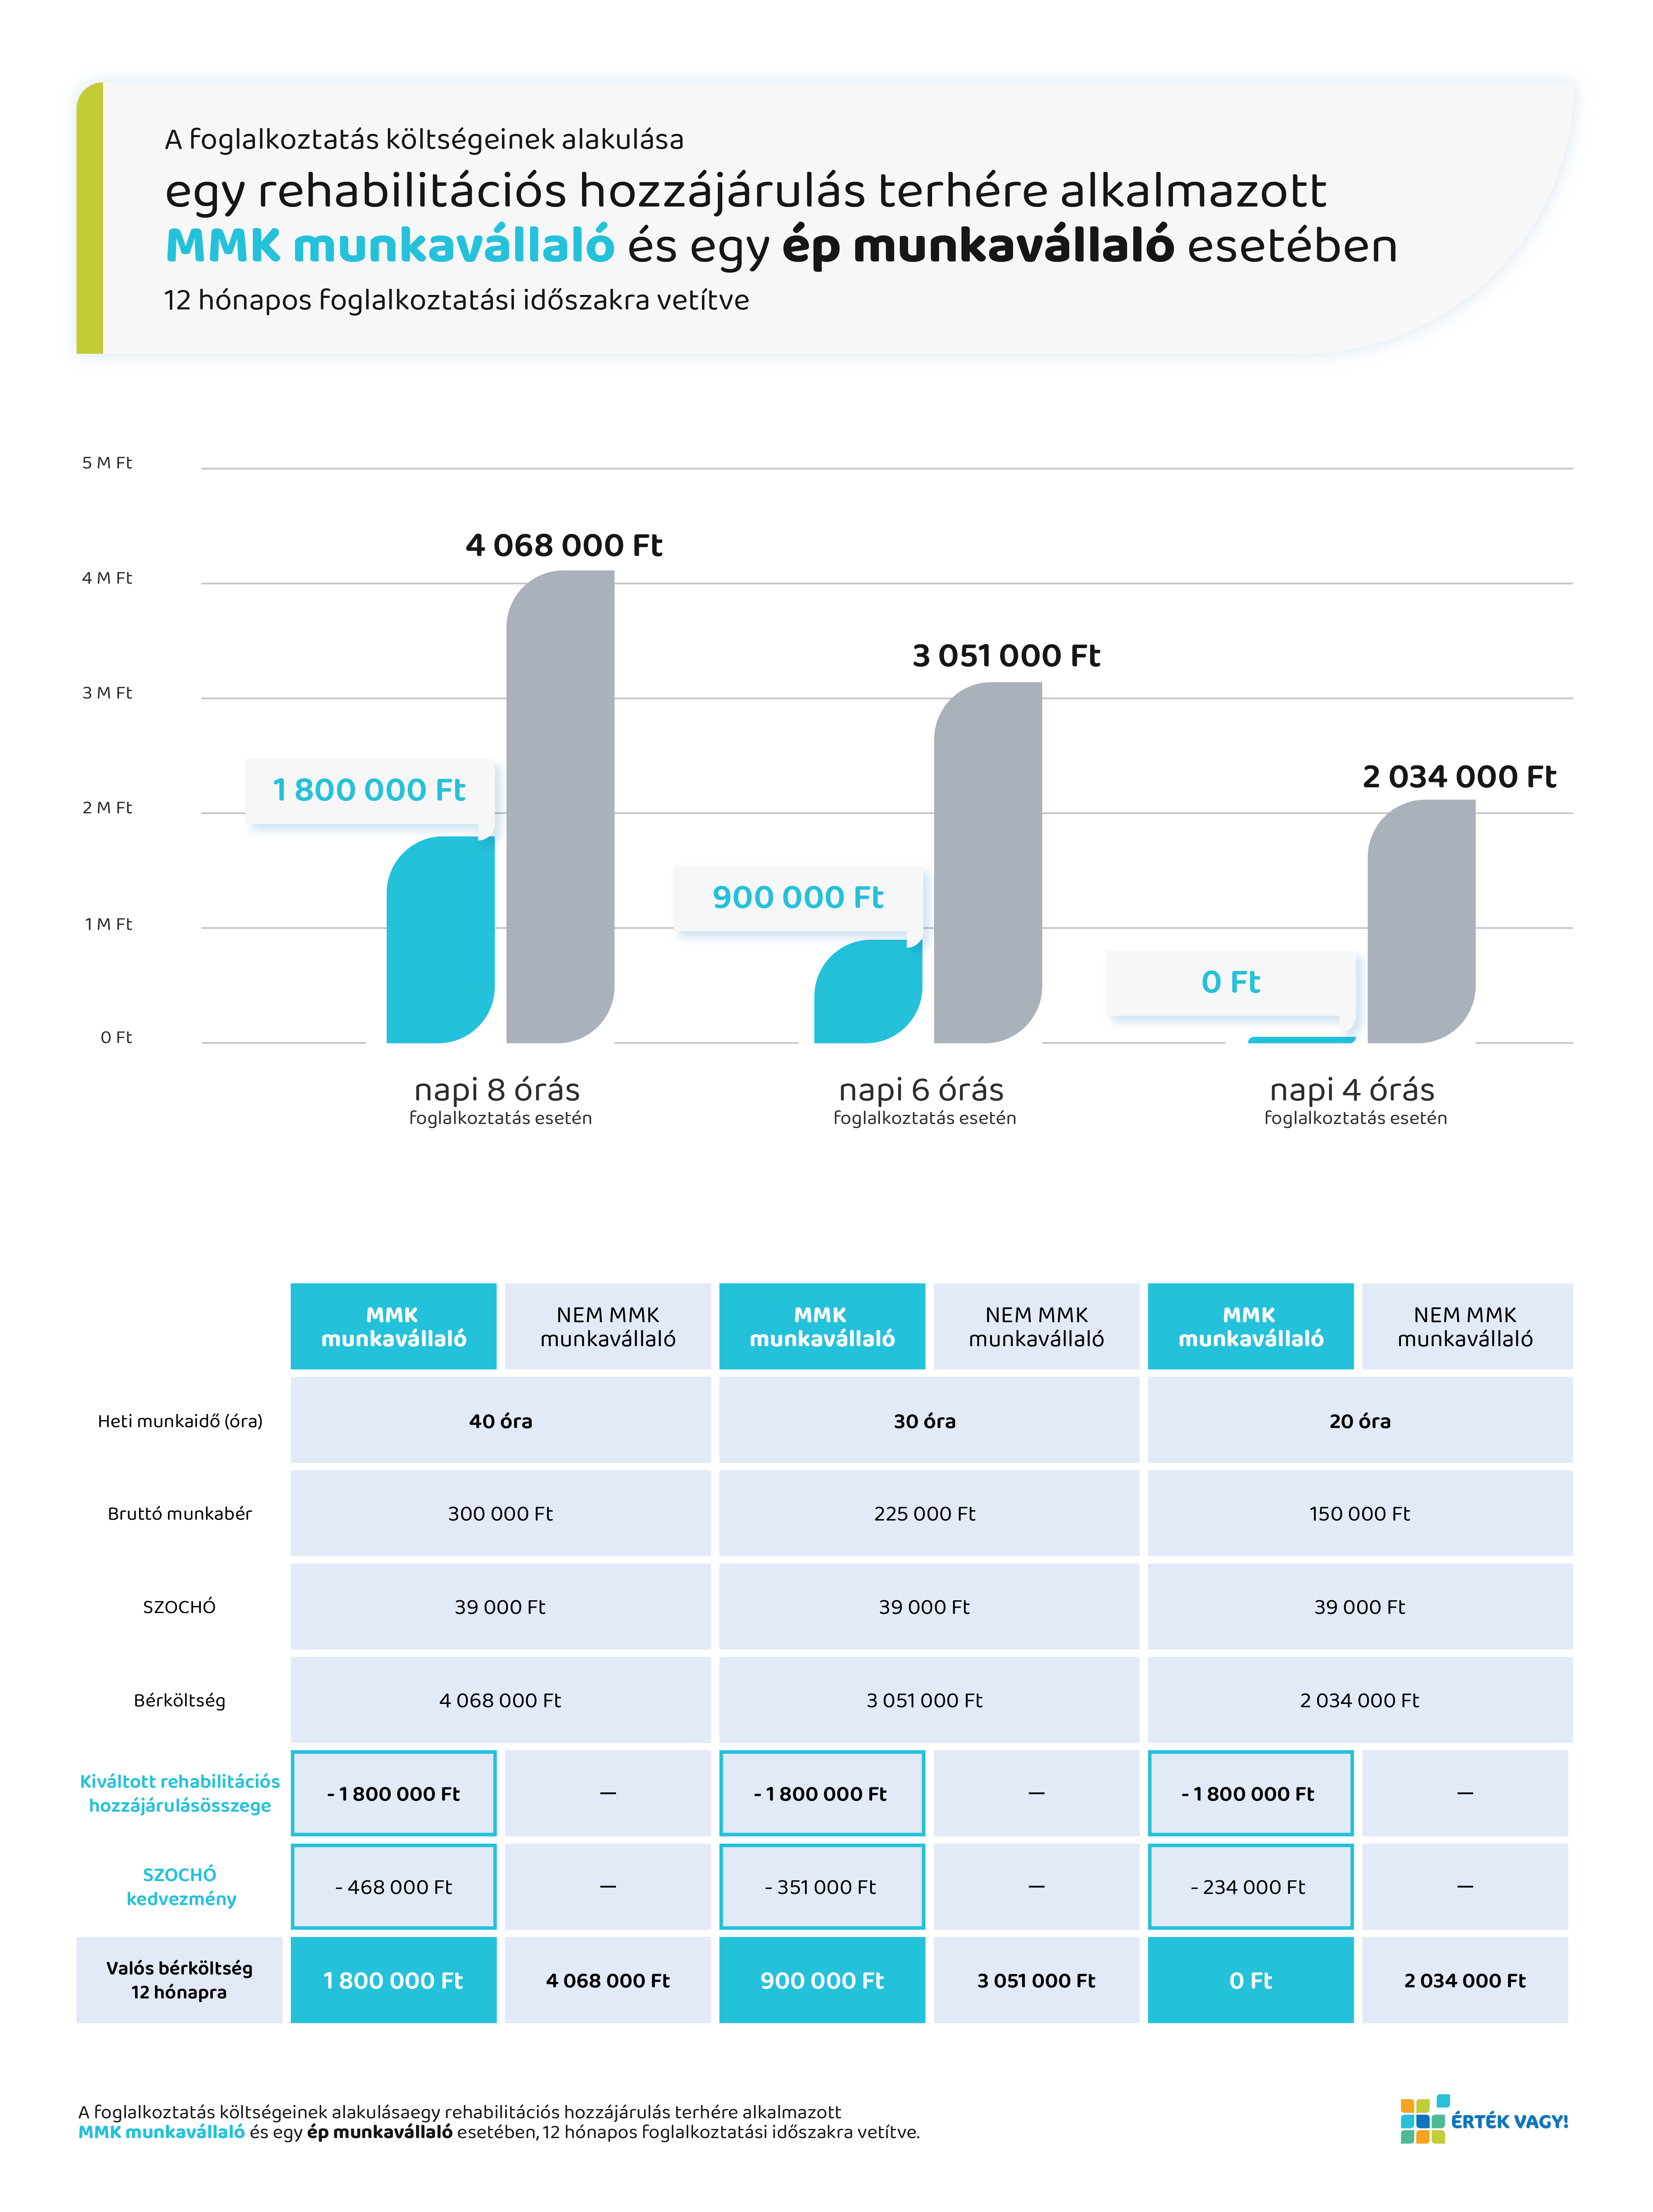 A rehabilitációs hozzájárulás terhére alkalmazott MMK munkavállaló foglalkoztatási költségeinek összehasonlítása egy ép munkavállalóval szemben - infografika.